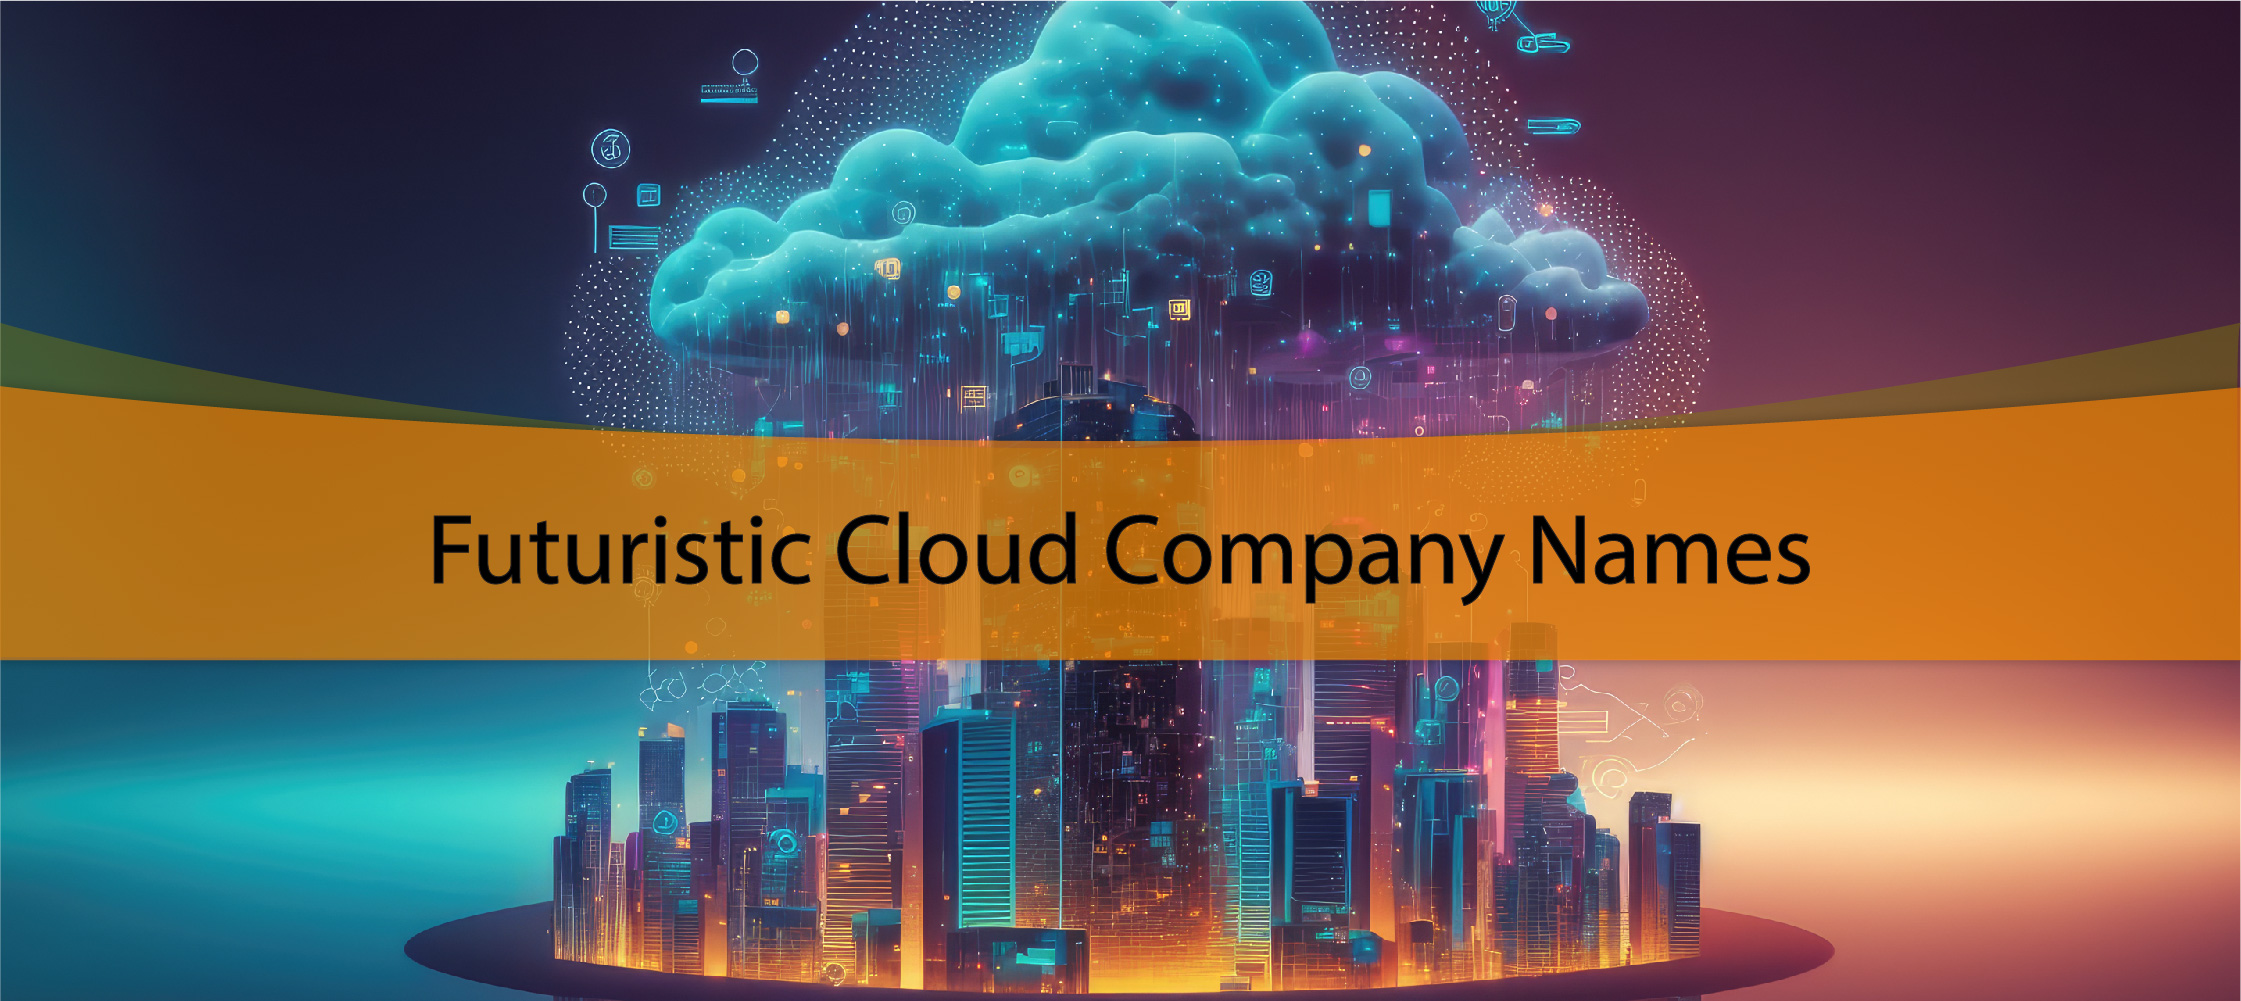 Futuristic Cloud Company Names